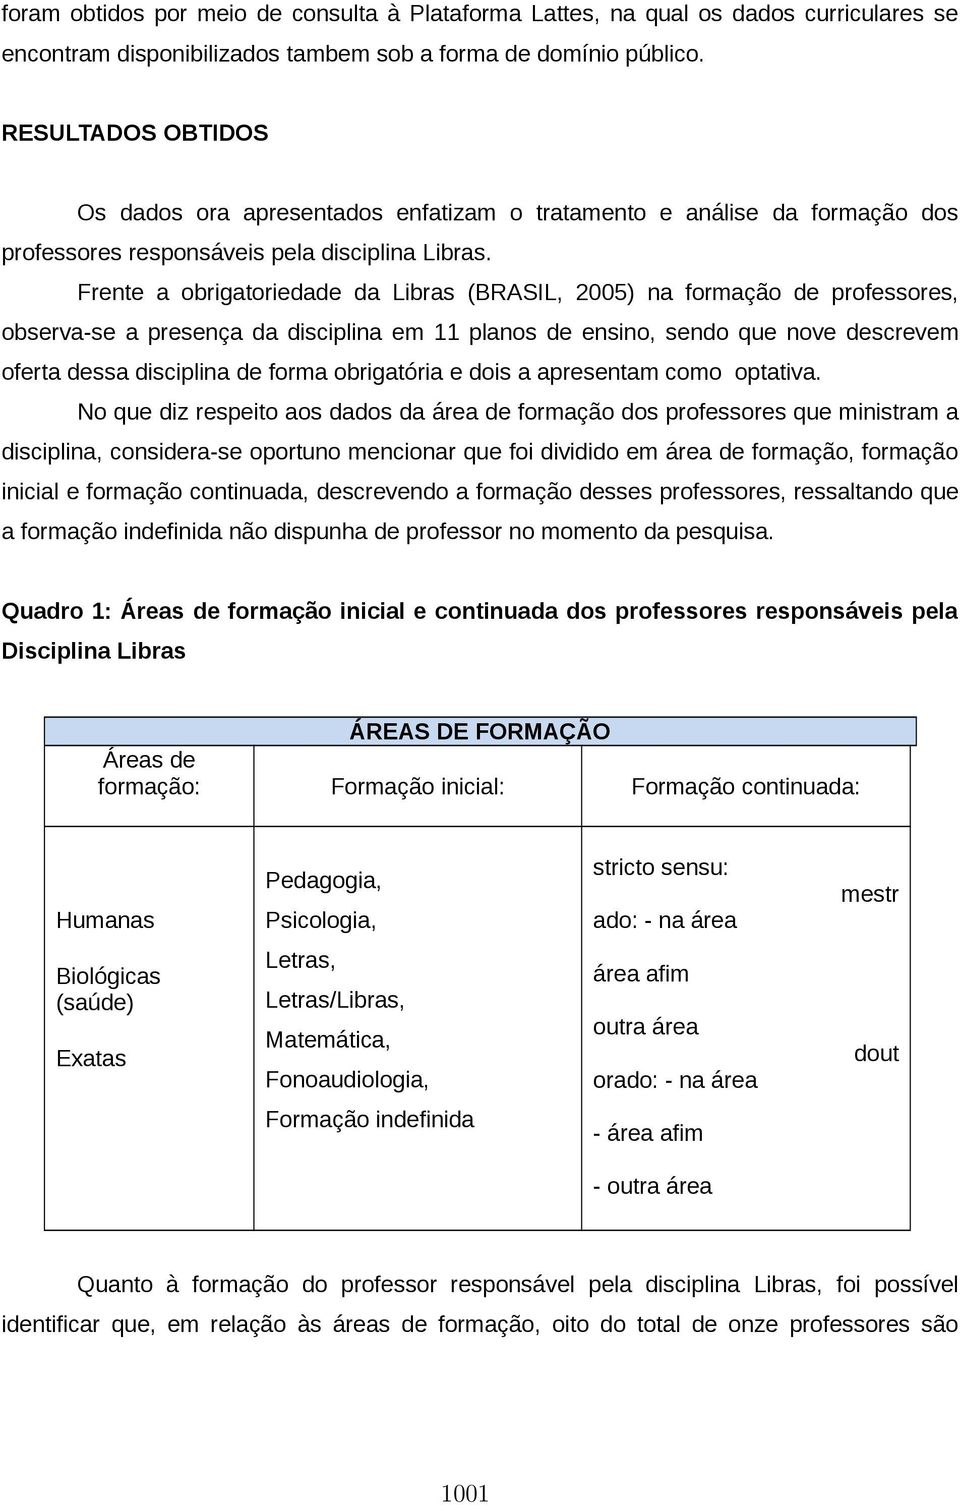 Frente a obrigatoriedade da Libras (BRASIL, 2005) na formação de professores, observa-se a presença da disciplina em 11 planos de ensino, sendo que nove descrevem oferta dessa disciplina de forma